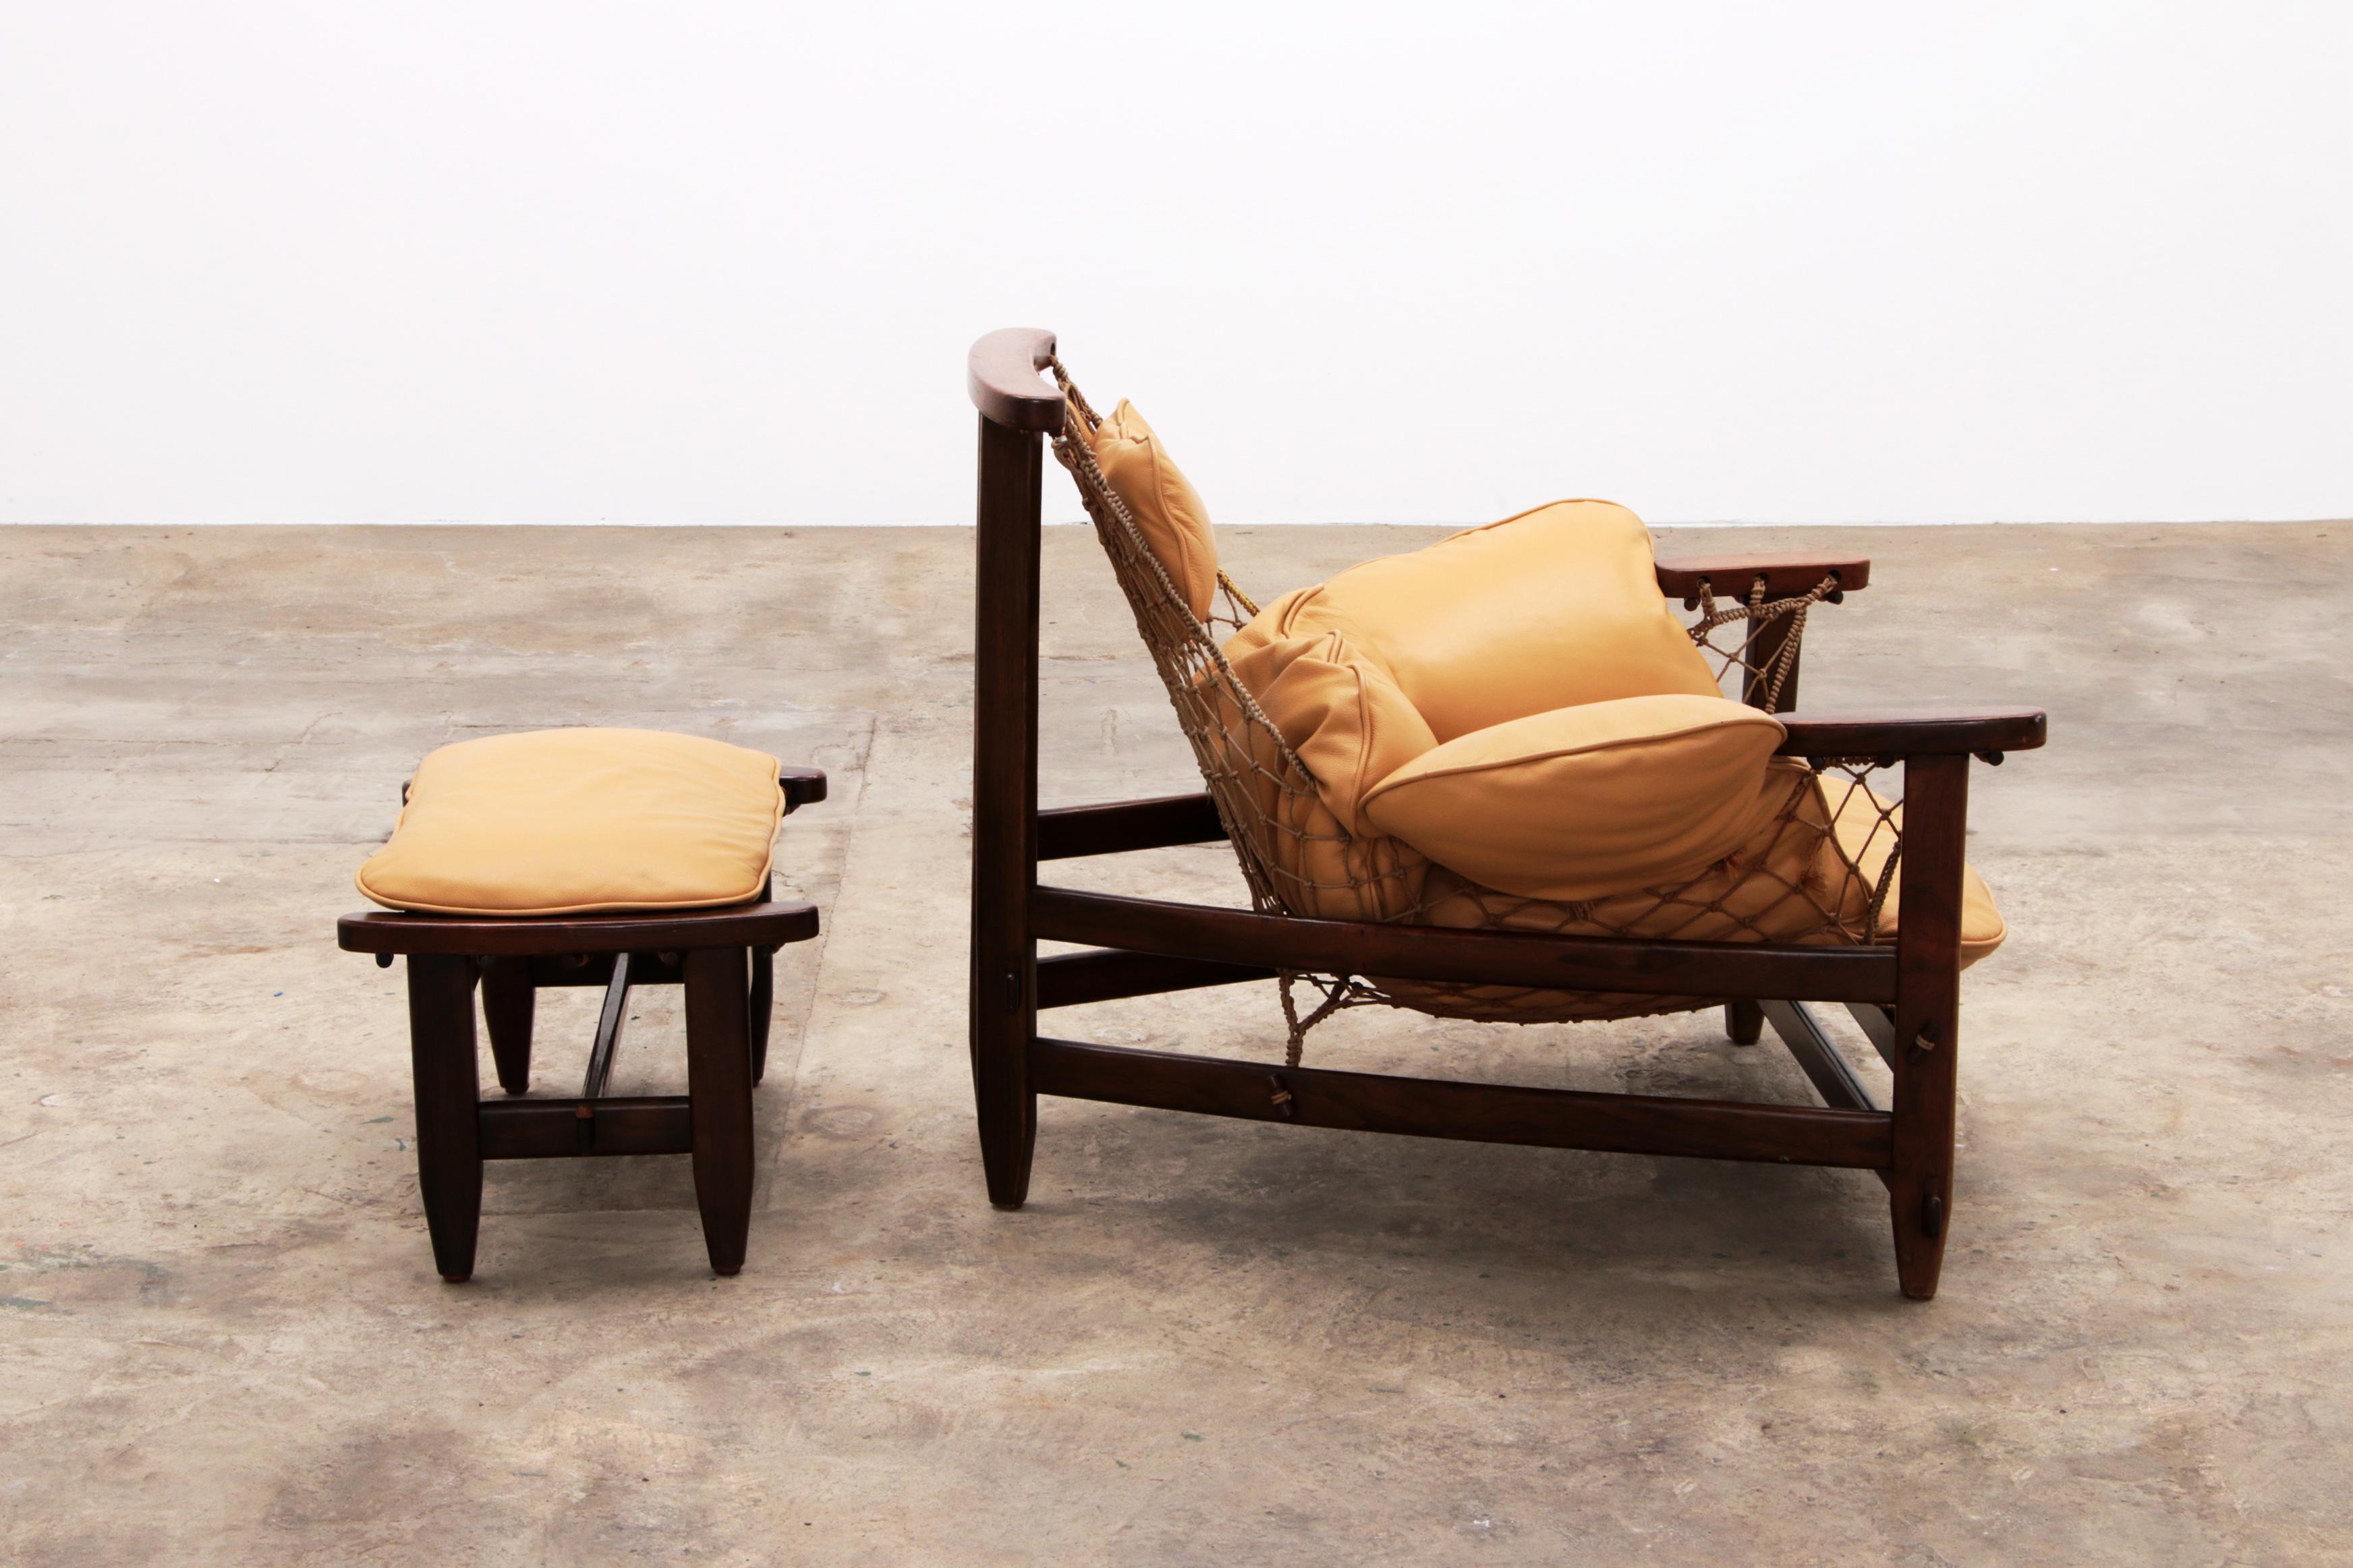 Cuir Chaise longue et pouf Jangada de Jean Gillon en bois tropical et cuir.